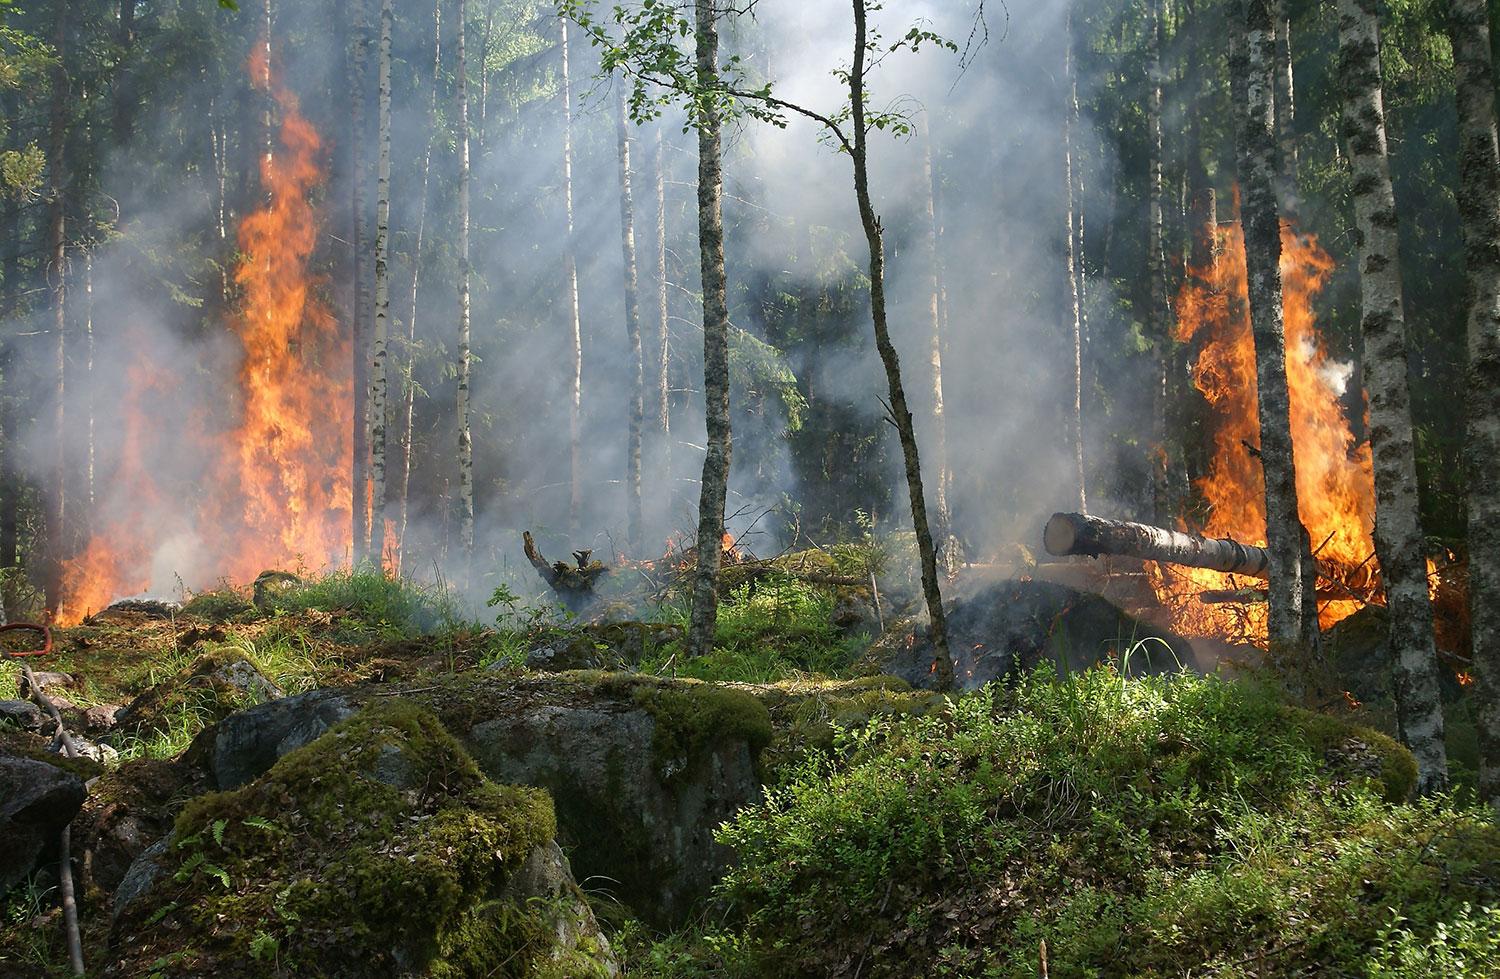  Las otras víctimas de los incendios forestales: pequeños roedores, anfibios y reptiles nativos